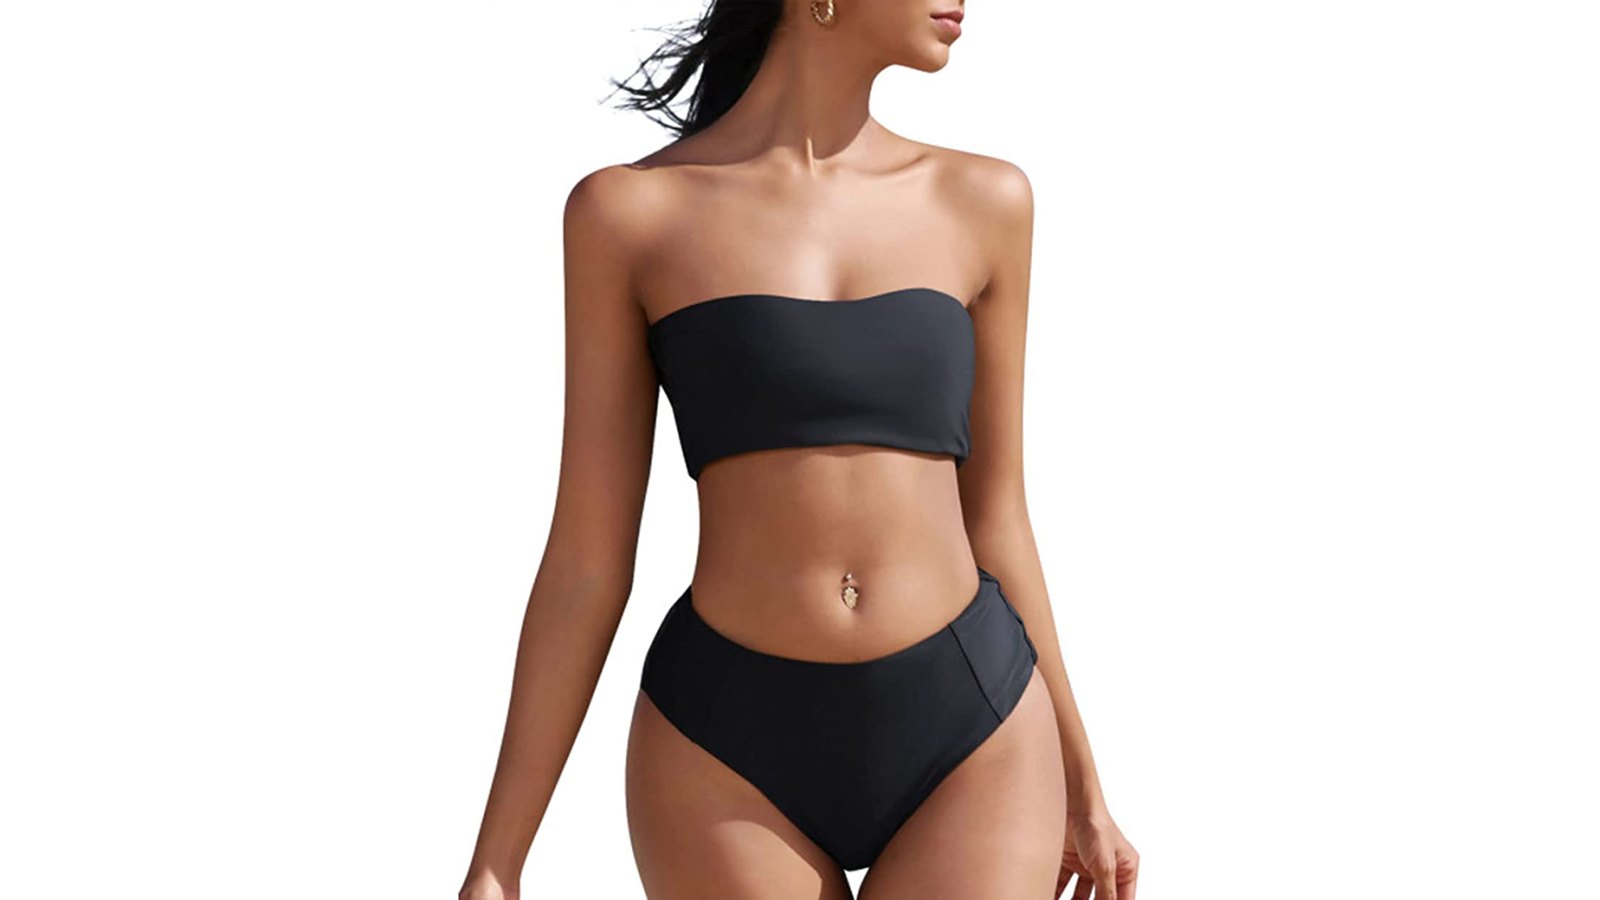 https://www.usmagazine.com/wp-content/uploads/2022/08/amazon-zaful-bandeau-bikini.jpg?w=1600&h=900&crop=1&quality=86&strip=all